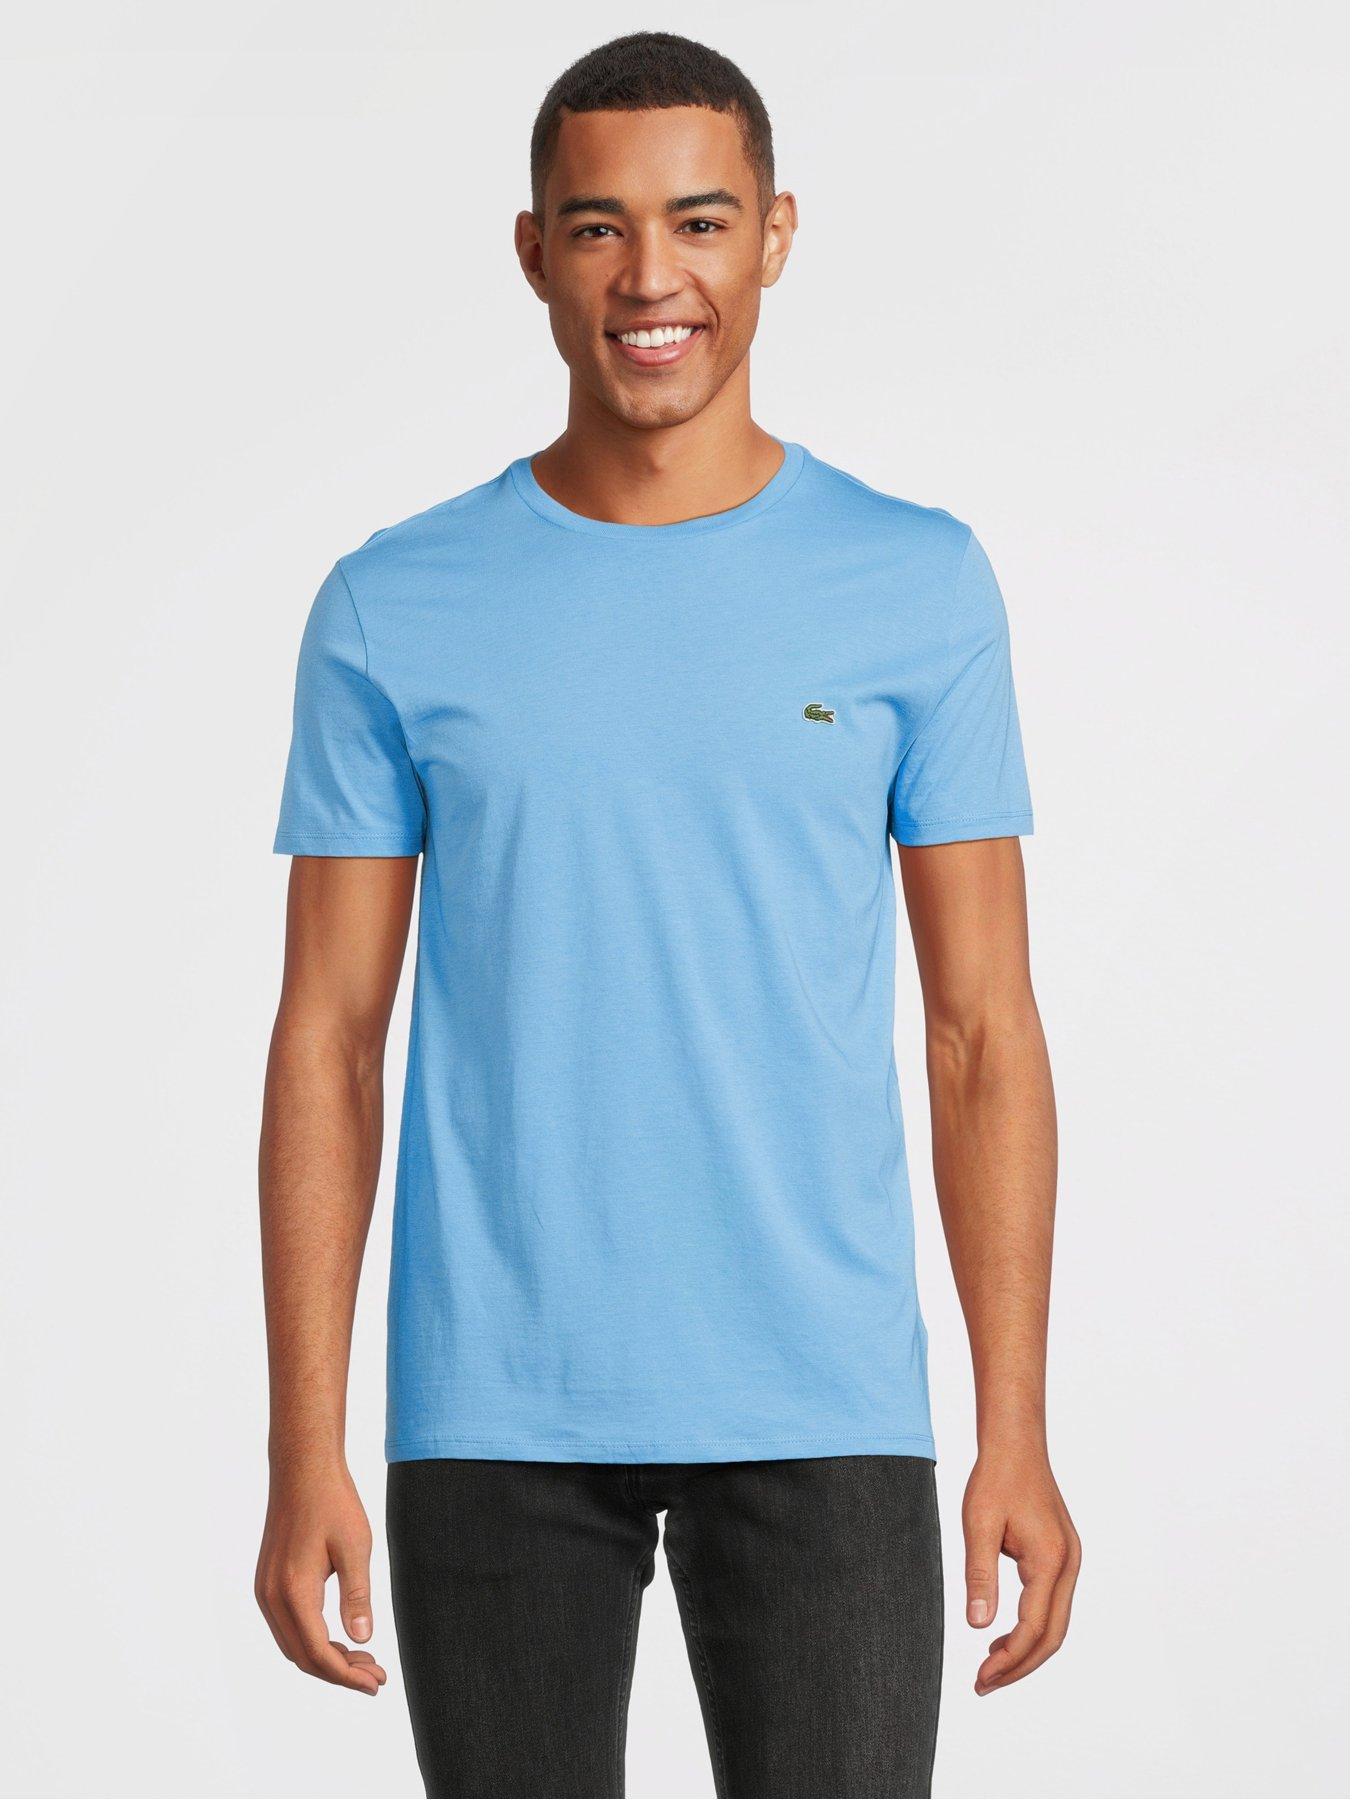 Men's Lacoste T-Shirts & Polo Shirts, Shop Lacoste